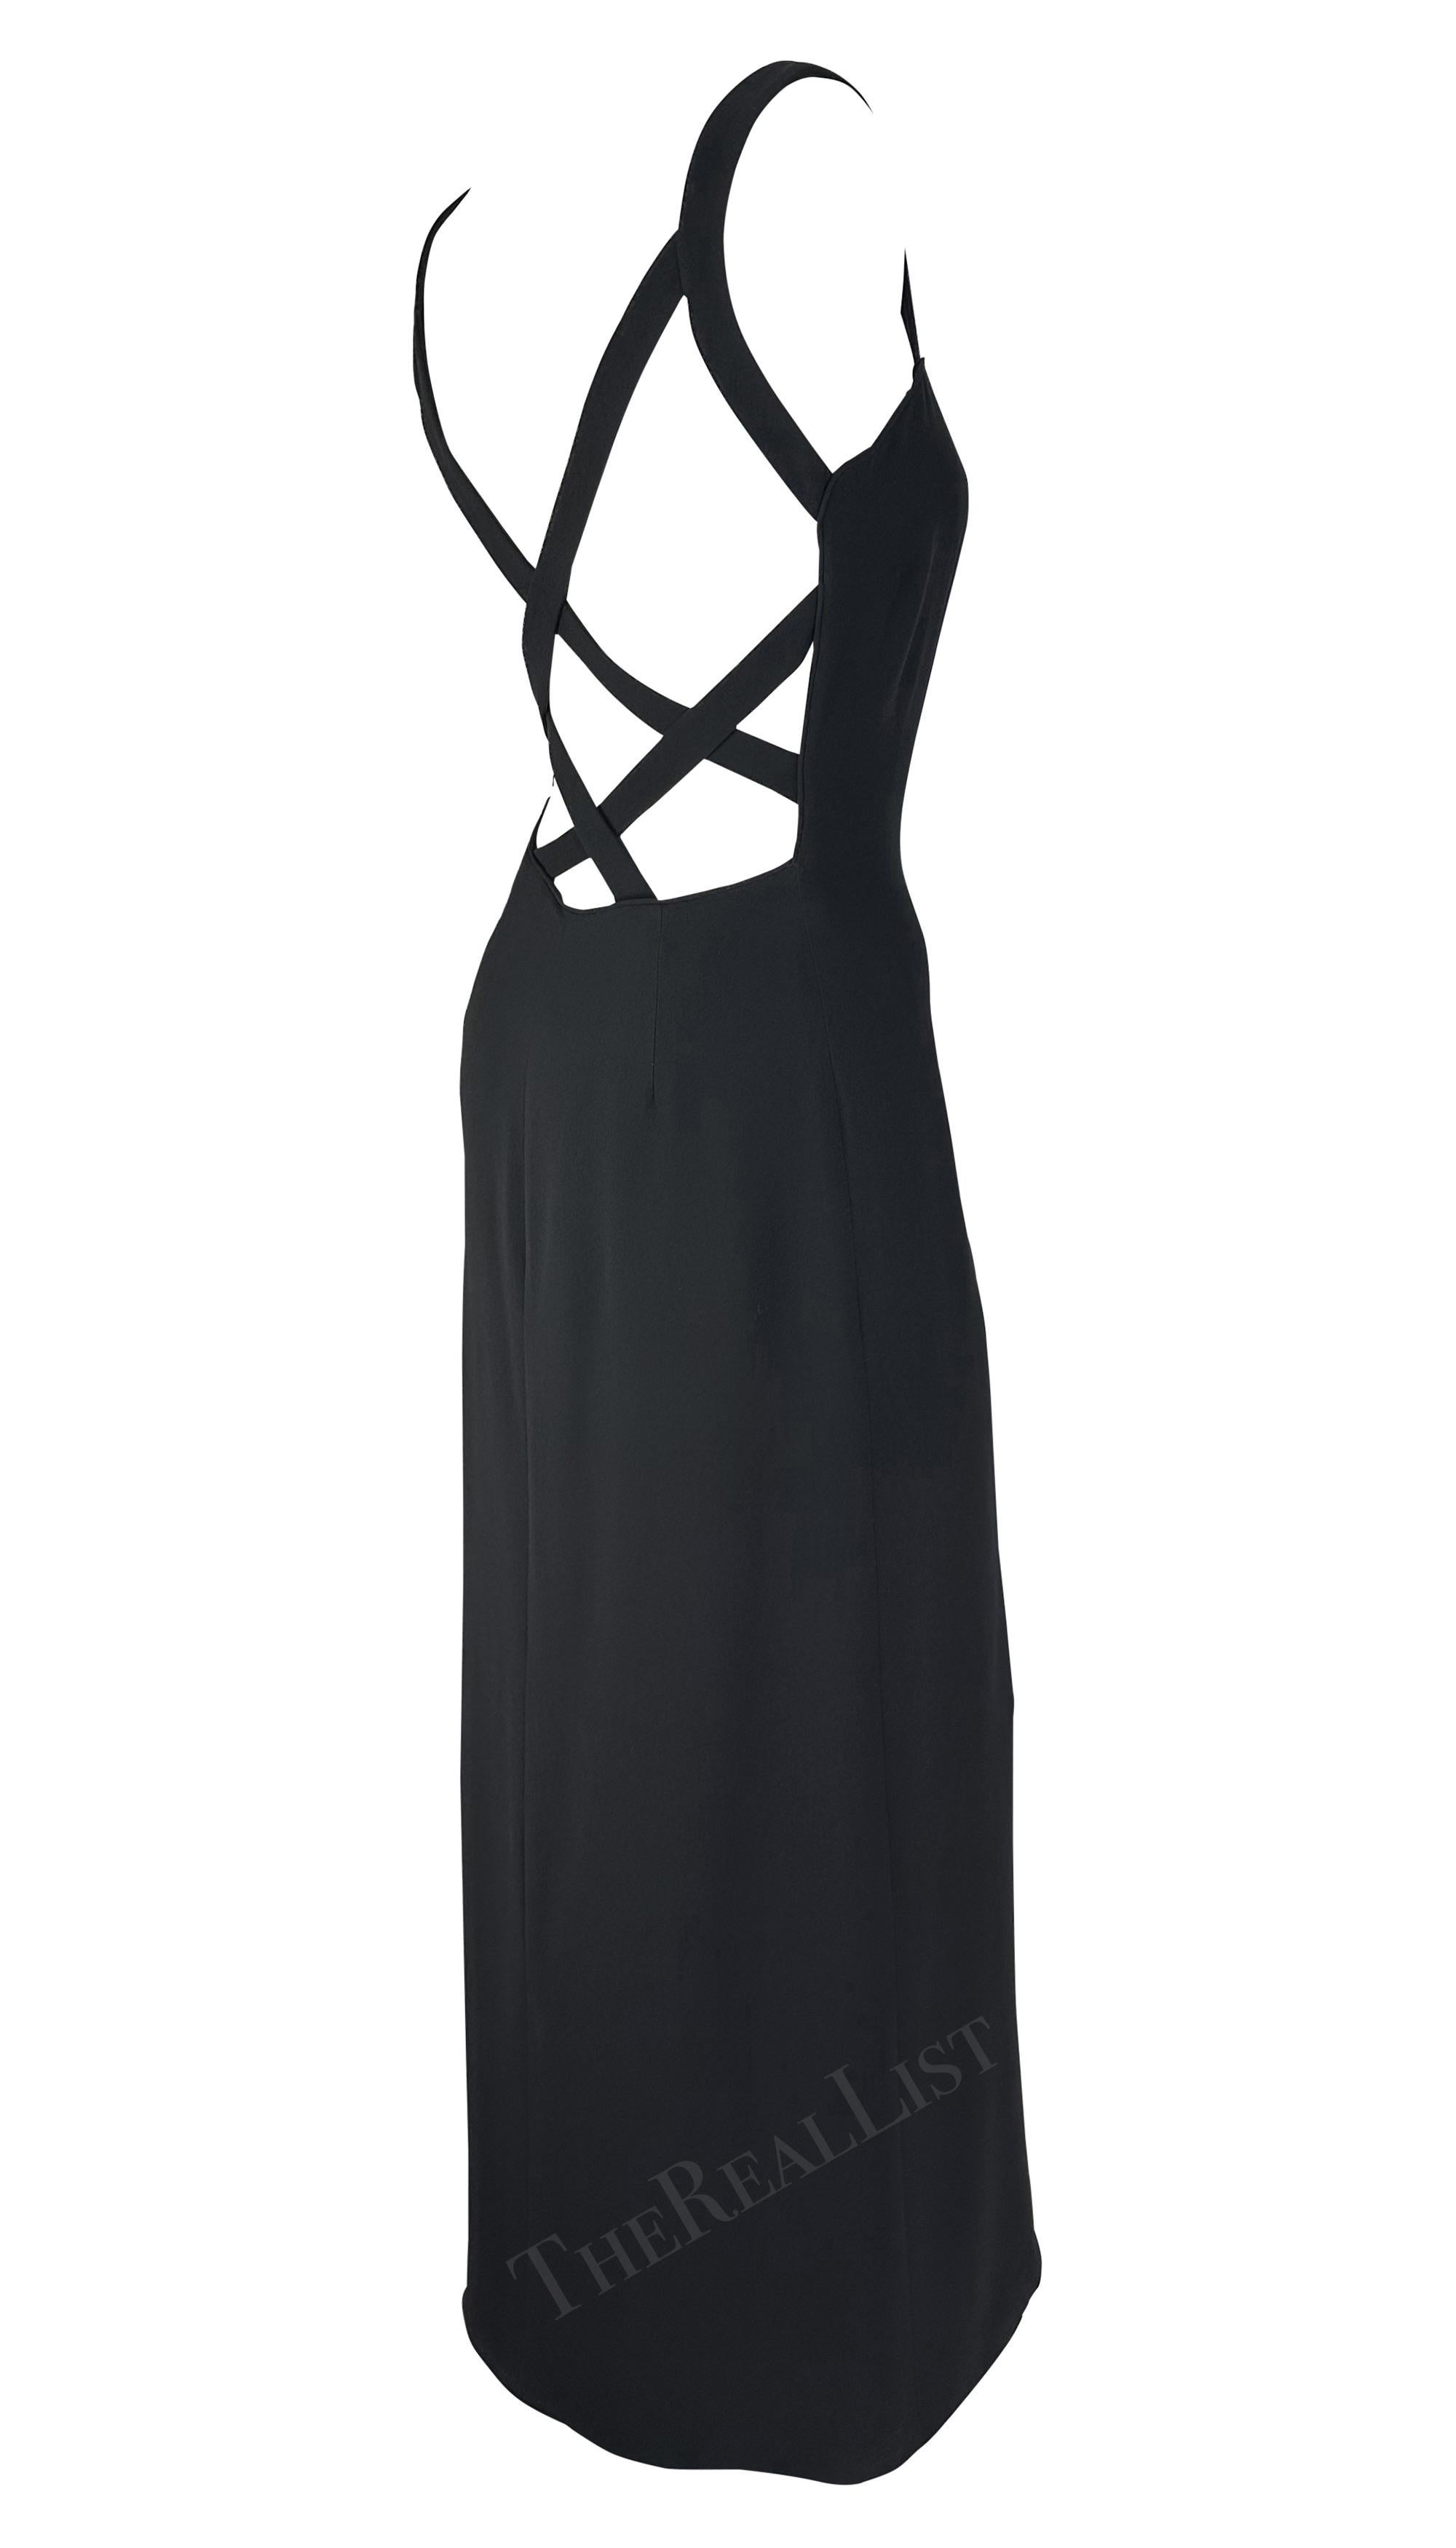 Sie präsentiert ein fabelhaftes schwarzes Kleid von Giorgio Armani. Dieses klassische schwarze Slip-Kleid aus den späten 1990er-Jahren wird durch Träger aufgepeppt, die einen freiliegenden Rücken zart verdecken. Dieses mühelos schicke und zeitlose